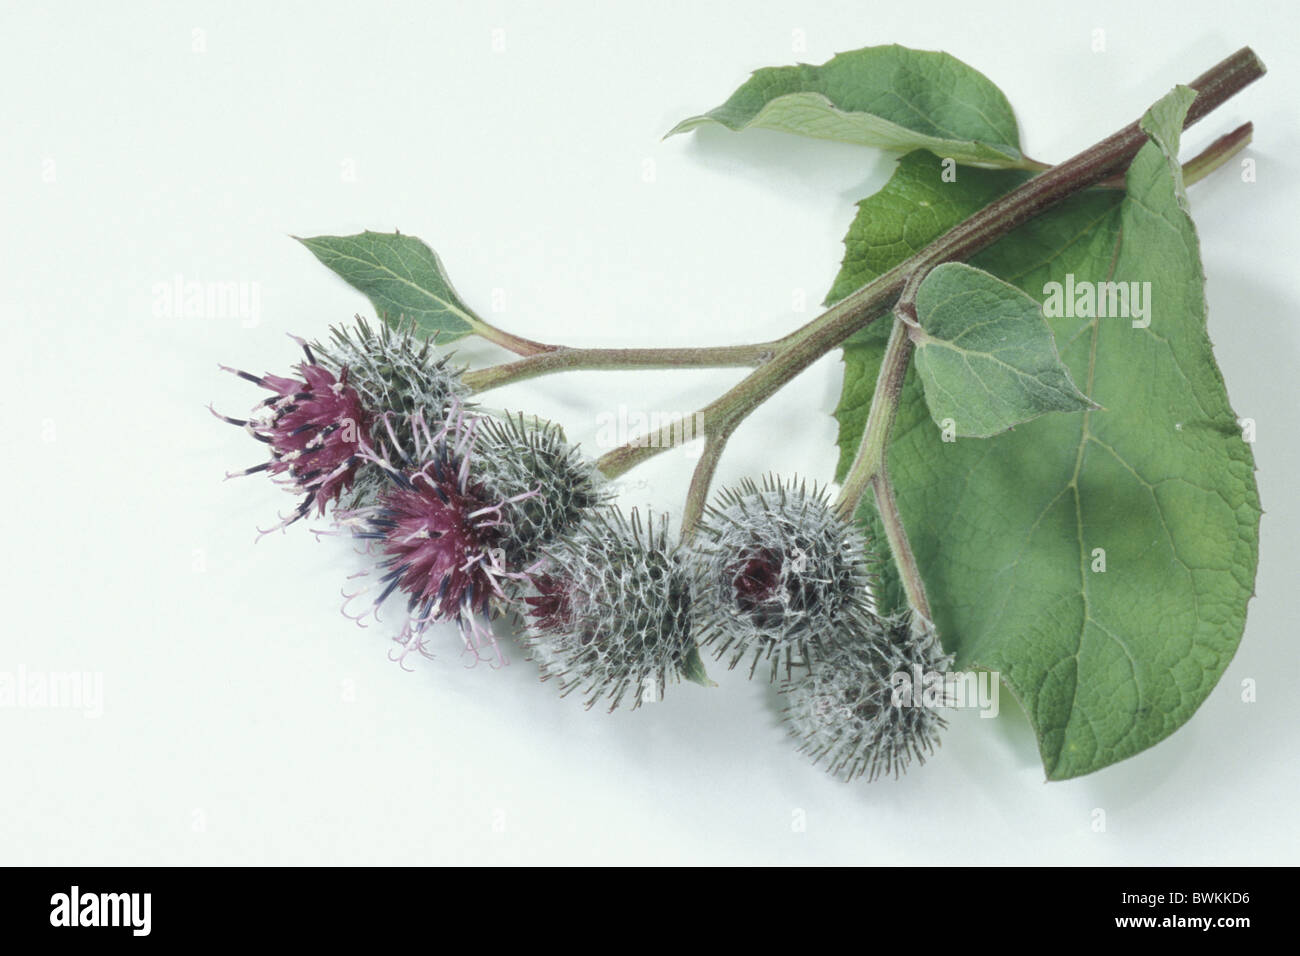 Downy Burdock (Arctium tomentosum), twig with flowers, studio picture. Stock Photo